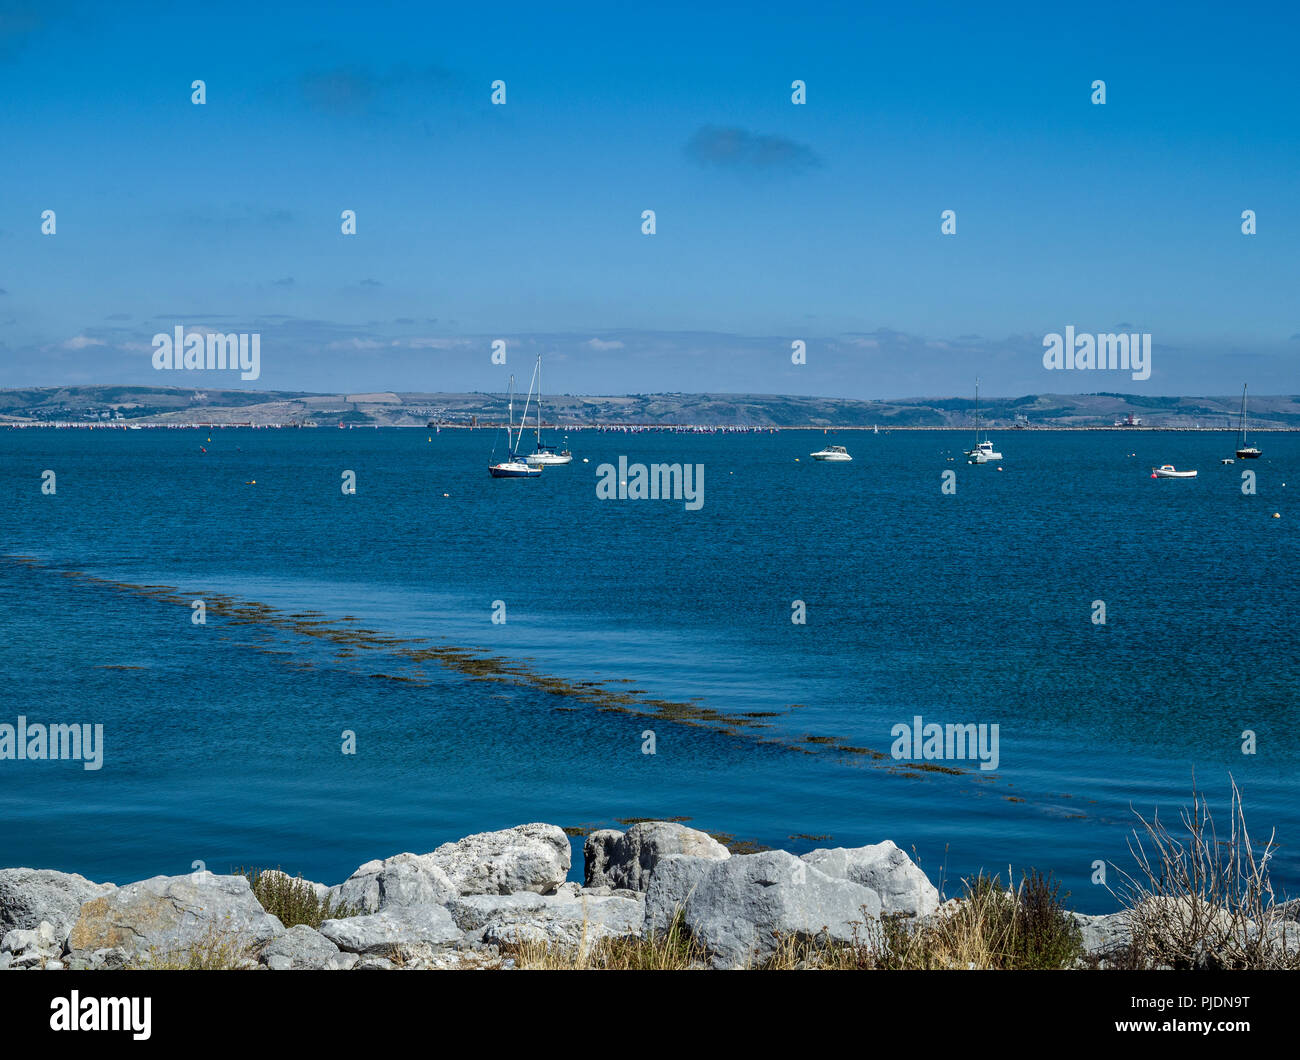 Bateaux amarrés sur les eaux bleues de Portland Harbour, Île de Portland, Dorset, England, UK Banque D'Images